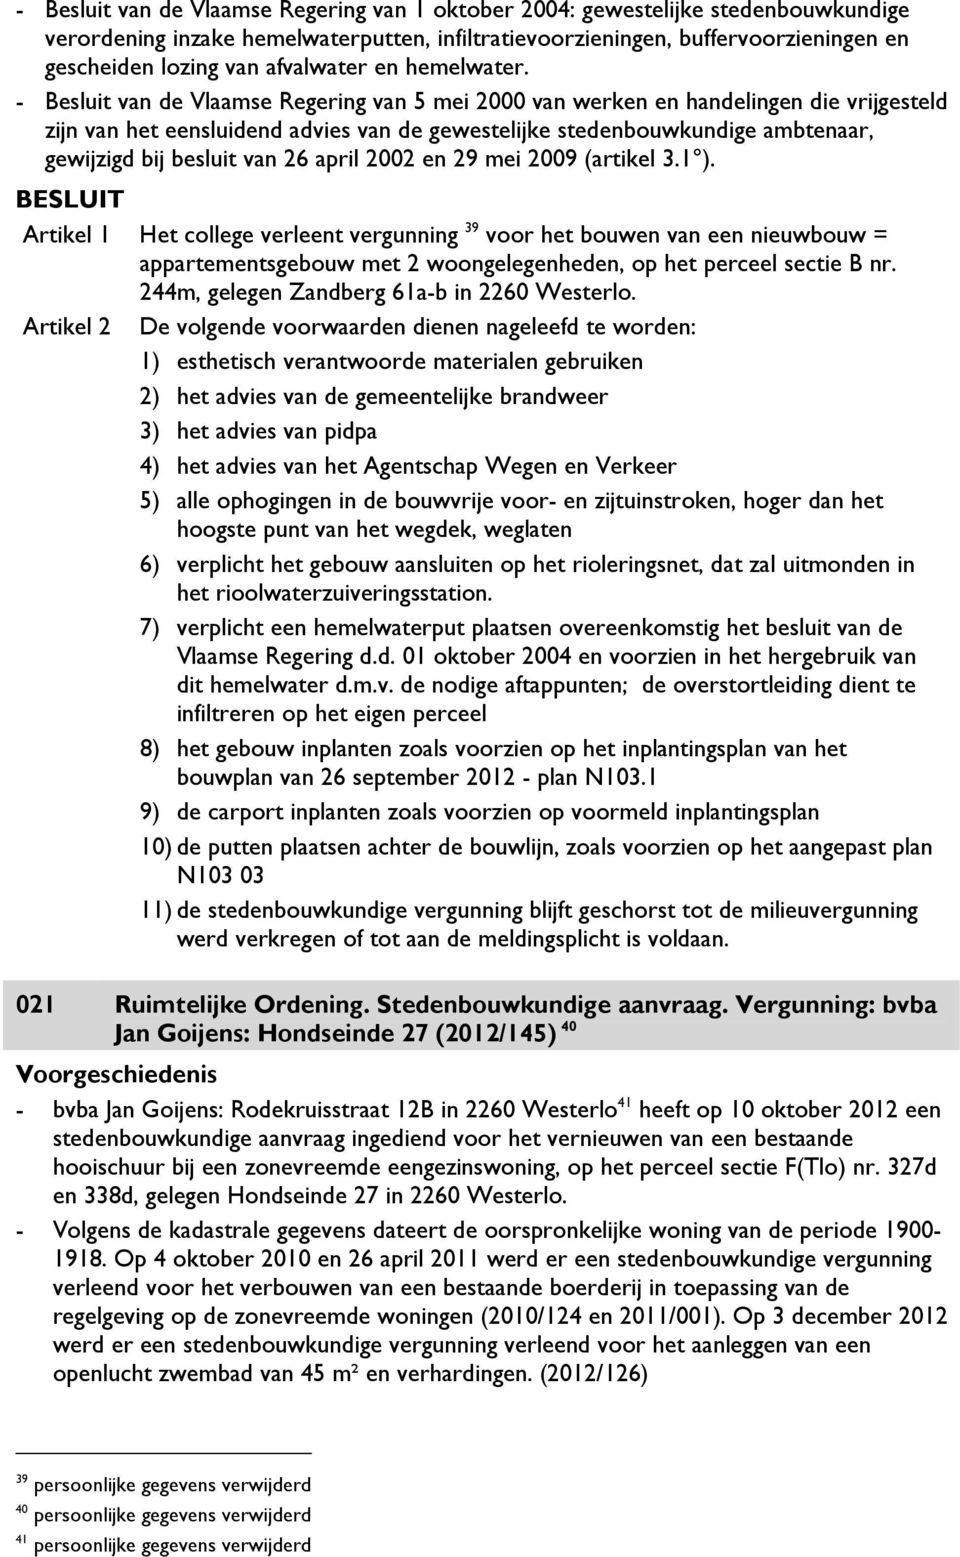 - Besluit van de Vlaamse Regering van 5 mei 2000 van werken en handelingen die vrijgesteld zijn van het eensluidend advies van de gewestelijke stedenbouwkundige ambtenaar, gewijzigd bij besluit van